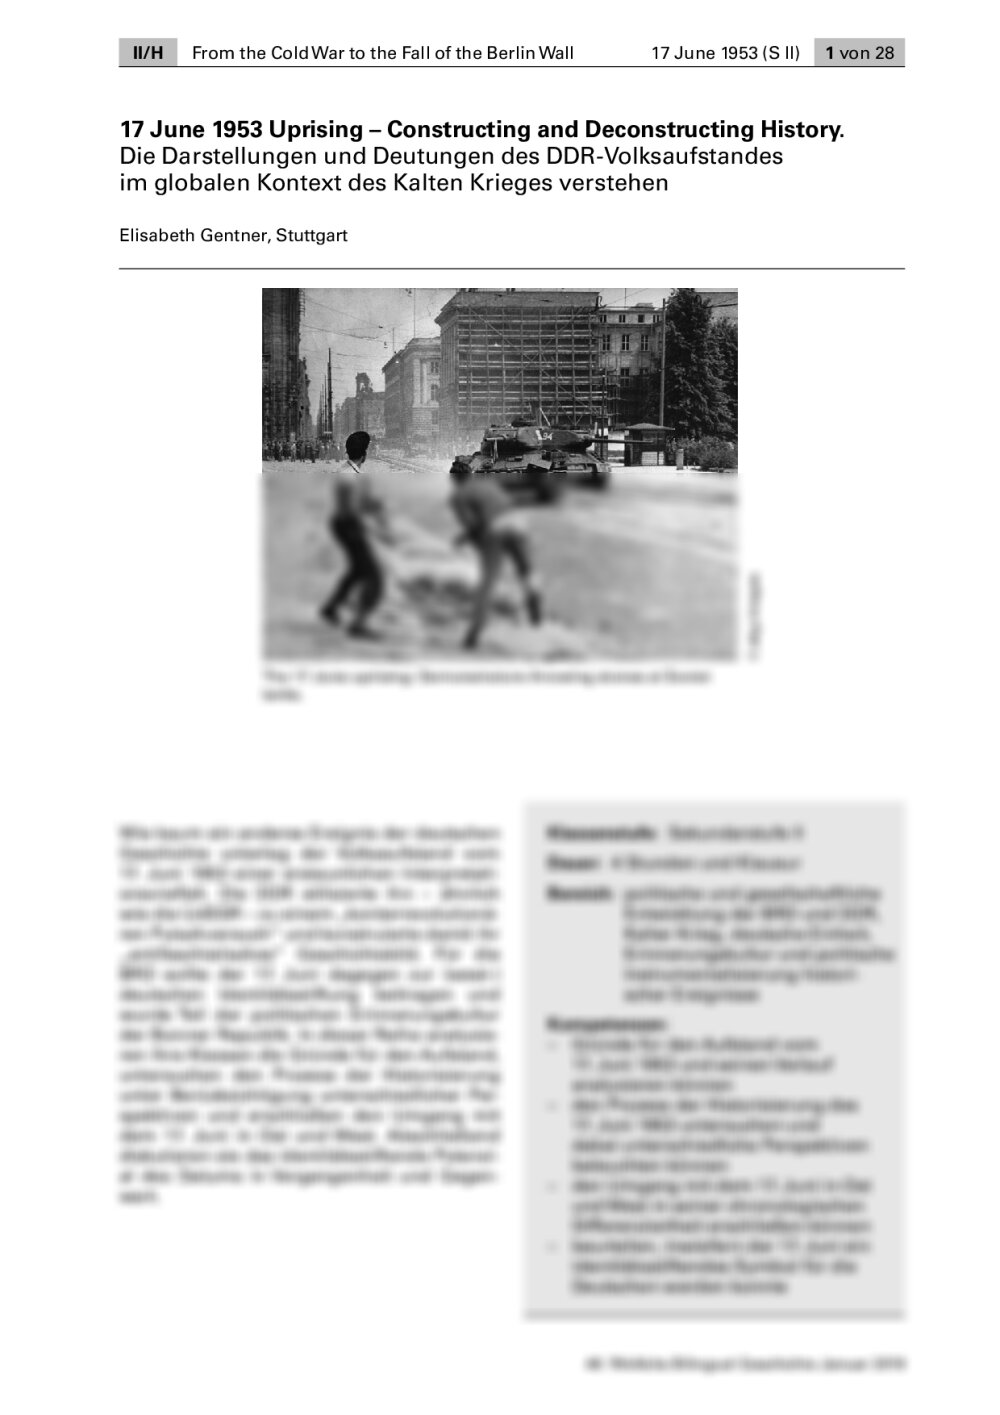 Die Darstellungen und Deutungen des DDR-Volksaufstandes im Kontext des Kalten Krieges verstehen - Seite 1